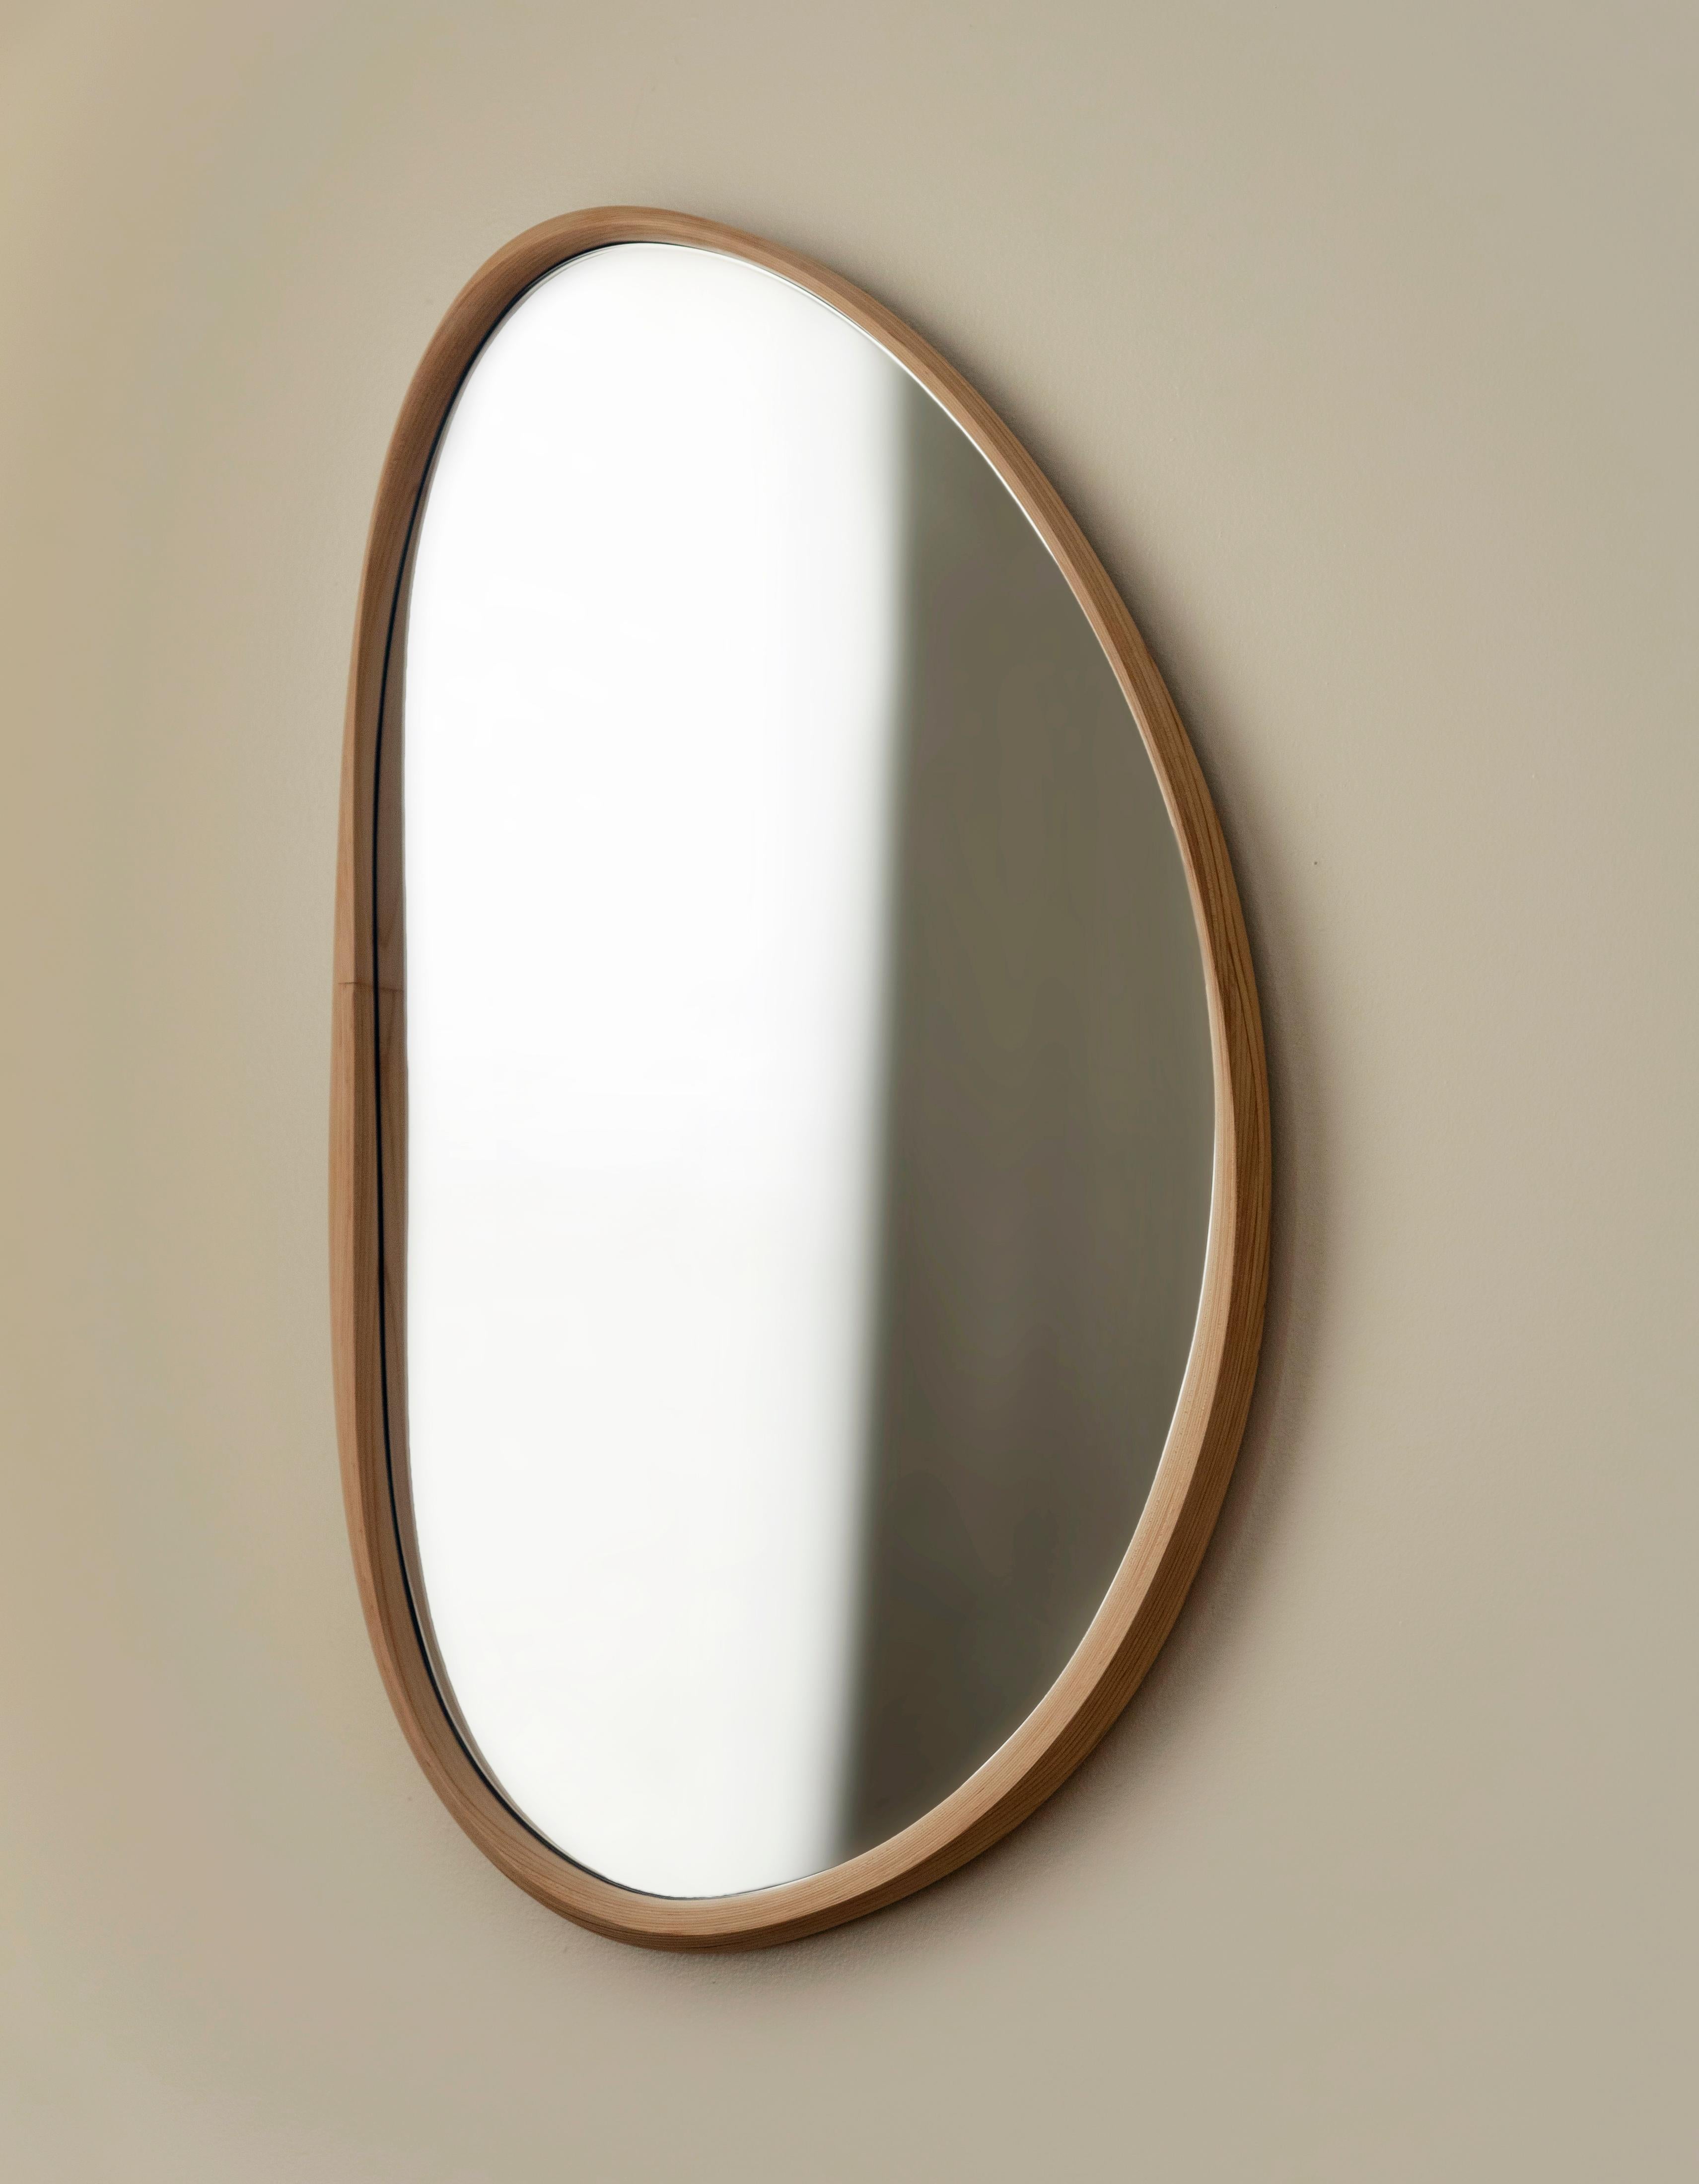 Der Pebble-Spiegel verwendet die traditionelle Holzbearbeitungstechnik der Biege-Laminierung, um die Schönheit des gedrehten Holzes zu bewahren und die Spannung in ein solides Objekt zu übertragen. Der wellenförmige, dünne und dicke Rahmen wird von